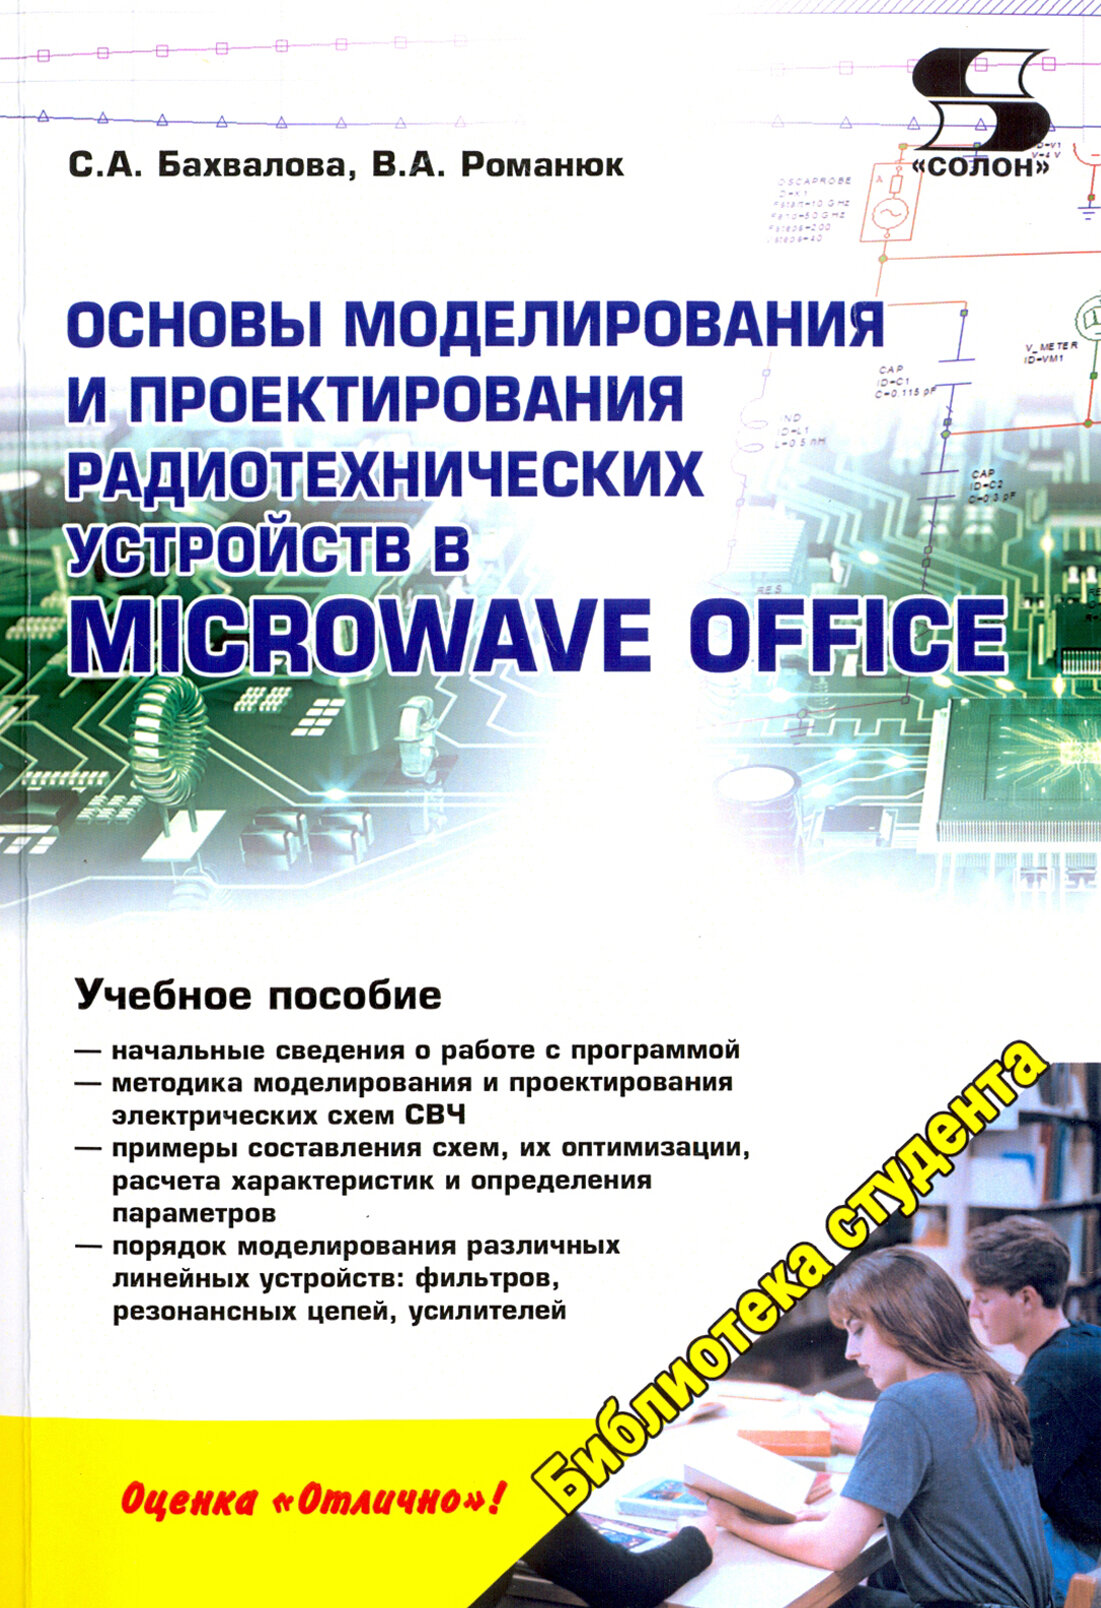 Основы моделирования и проектирования радиотехнических устройств в Microwave Office - фото №3